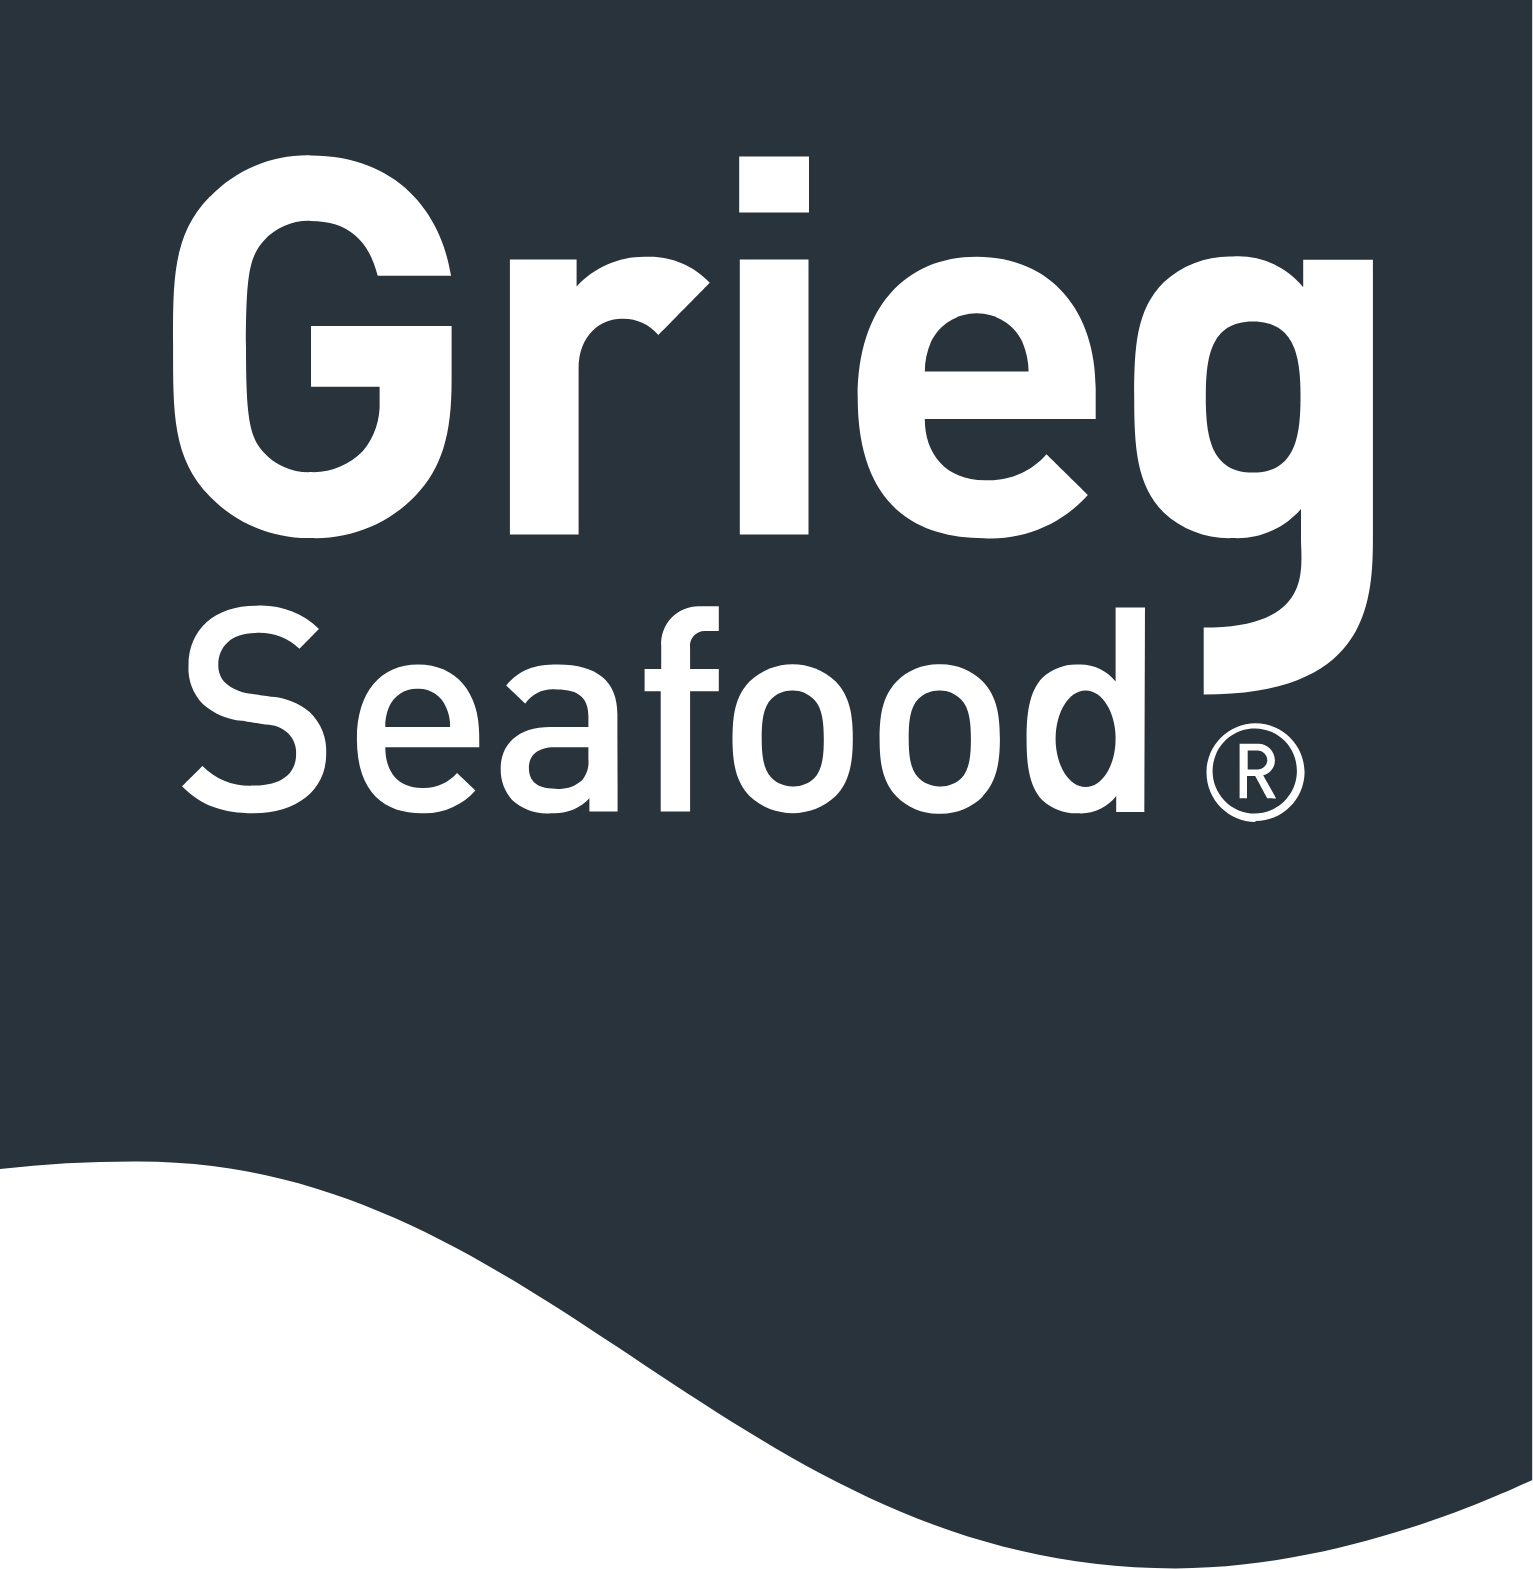 Grieg Seafood logo (PNG transparent)